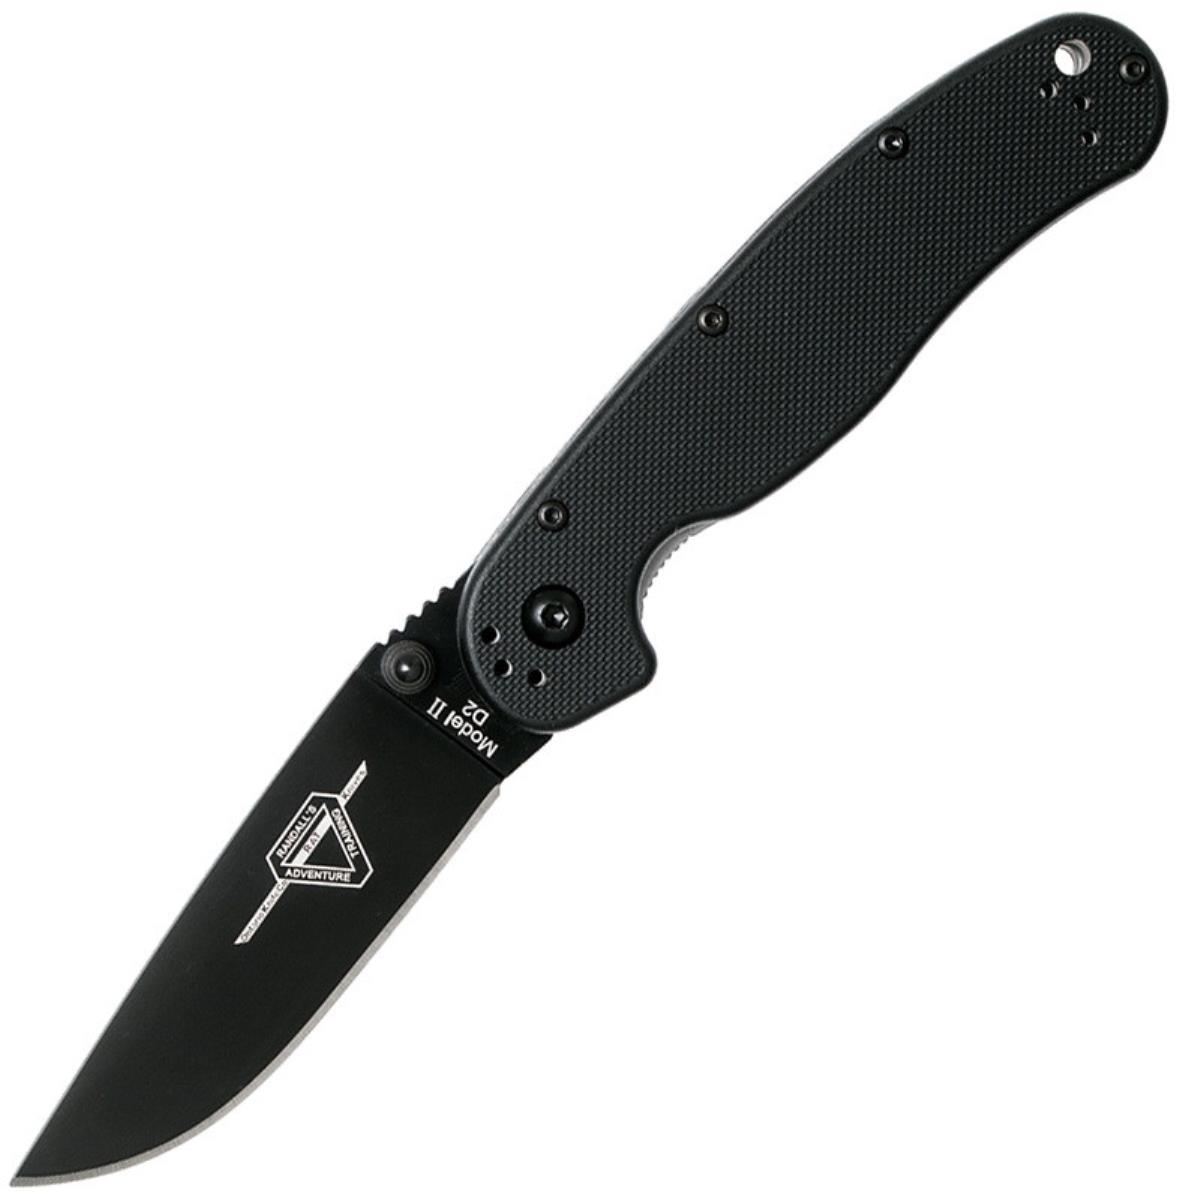 Нож RAT II складн.,чёрная нейлоновая рукоять, клинок AUS8 чёрное покрытие (8861)  ONTARIO нож wraith ice series smoke складн серо коричневая полимерная рукоять клинок aus8 8798sm ontario